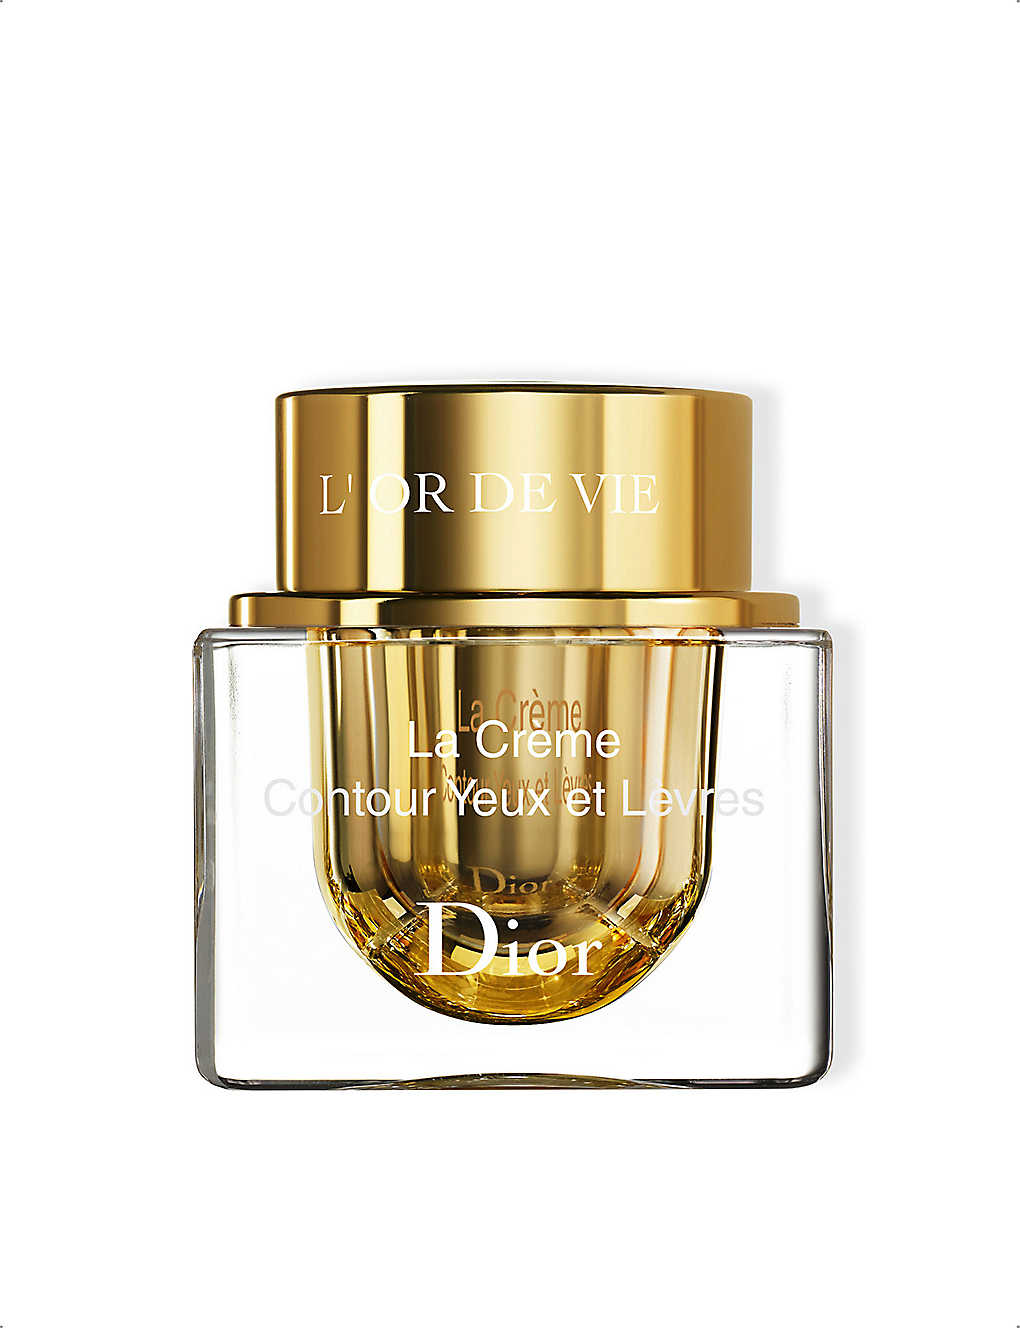 Dior L'or De Vie La Crème Yeux Refillable 15ml